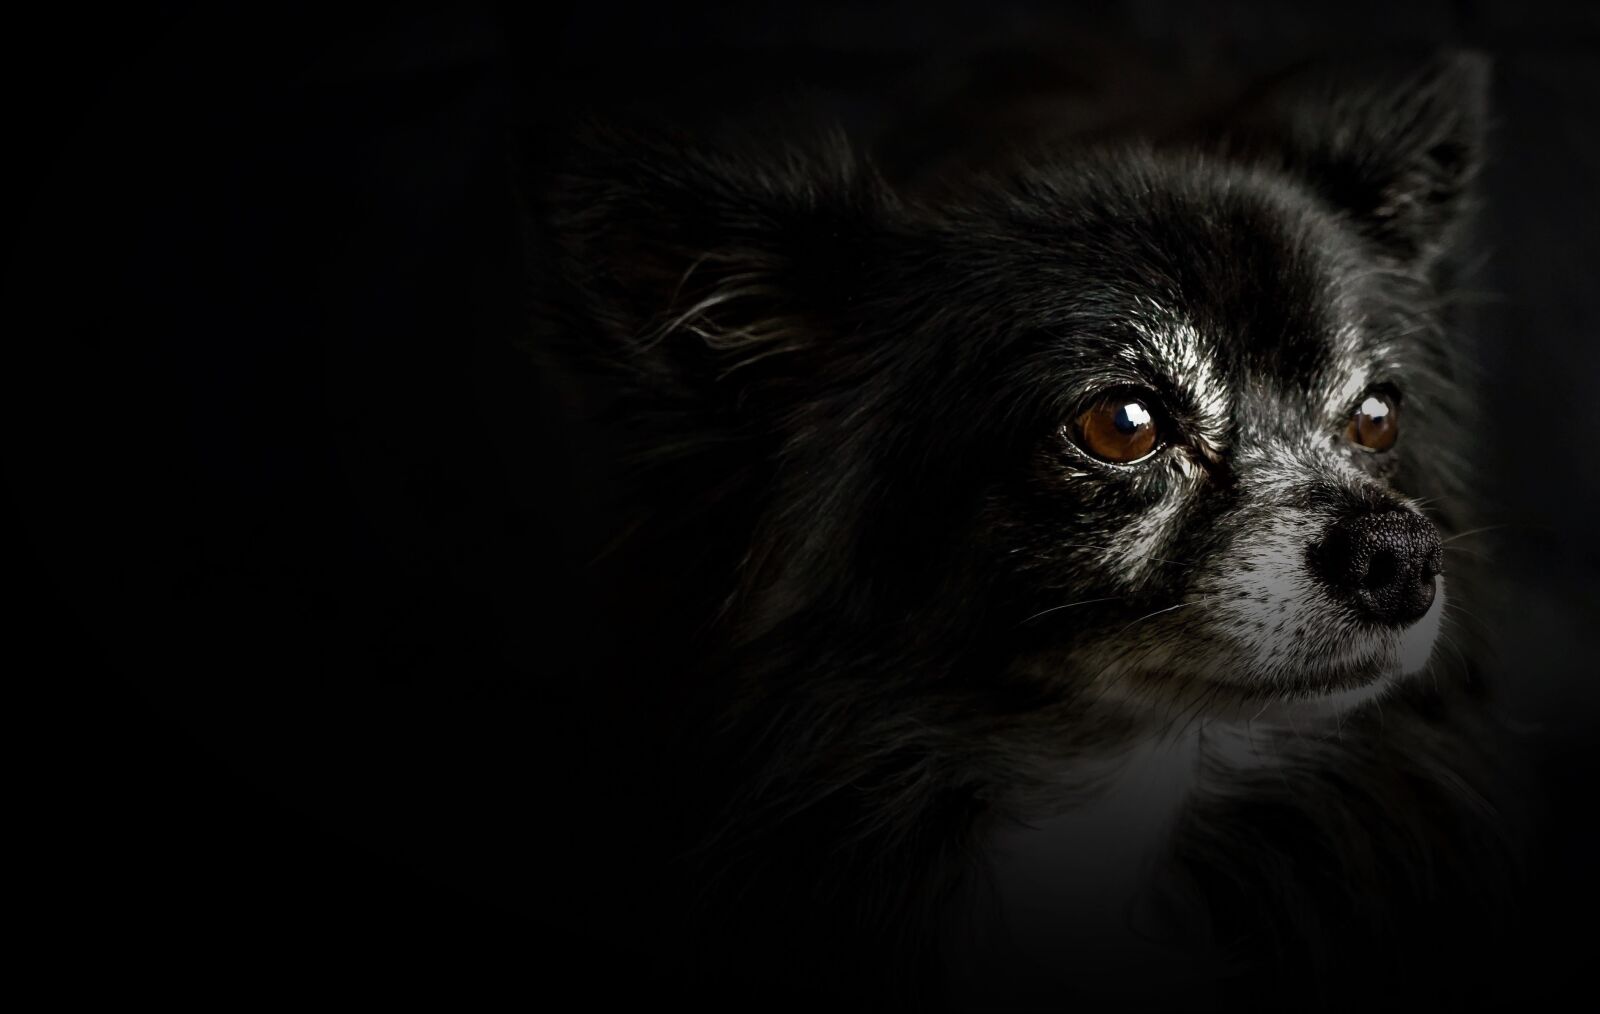 Sony a6000 + Sony E 30mm F3.5 Macro sample photo. Chihuahua, small dog, black photography